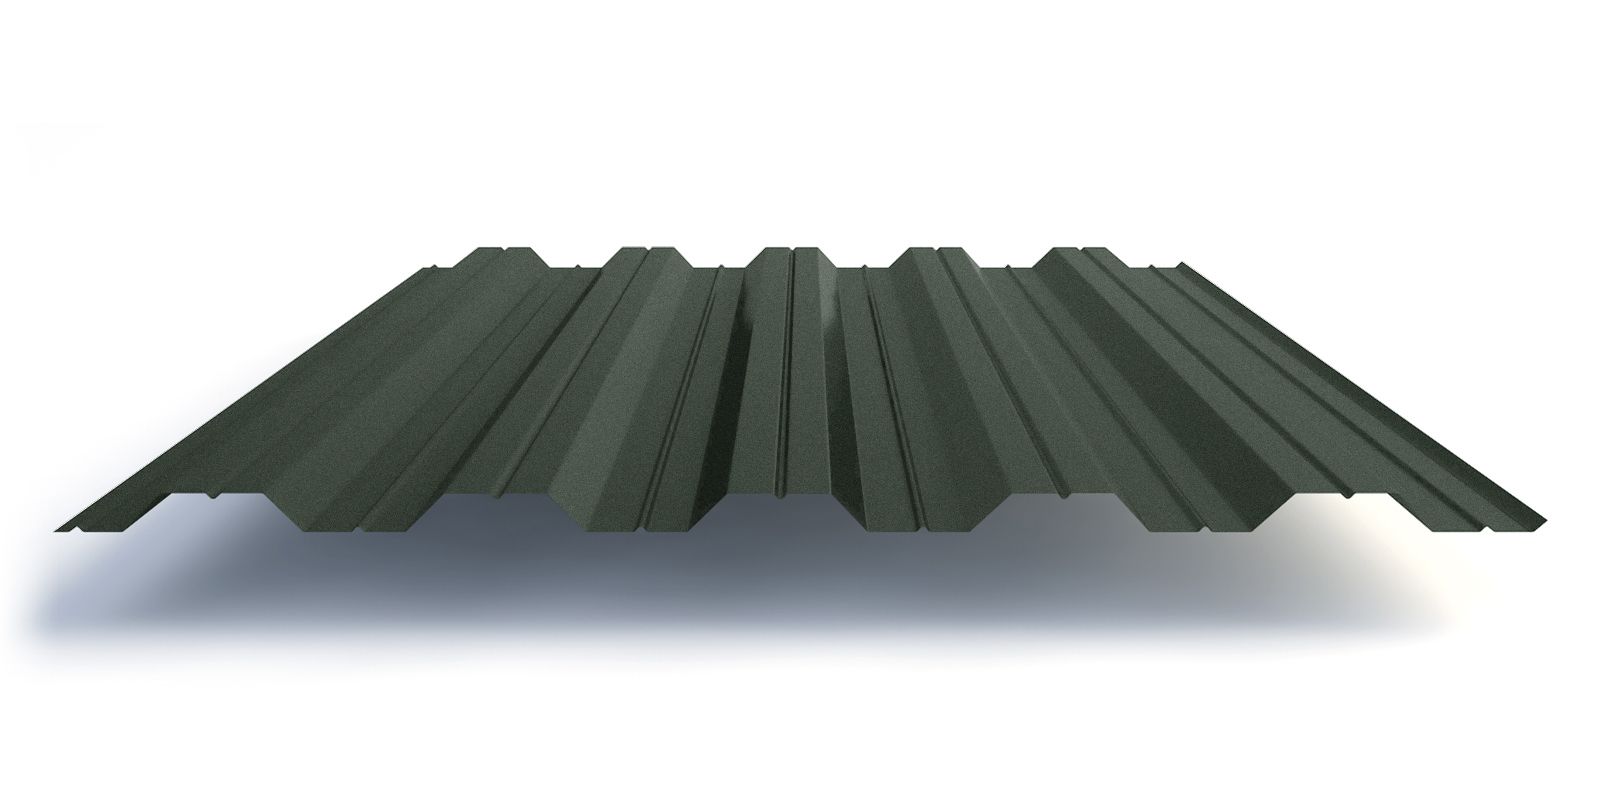 Профлист НС35 с покрытием GreenCoat® Pural Matt 0,5 мм, изображение, фото | Сталь ТД